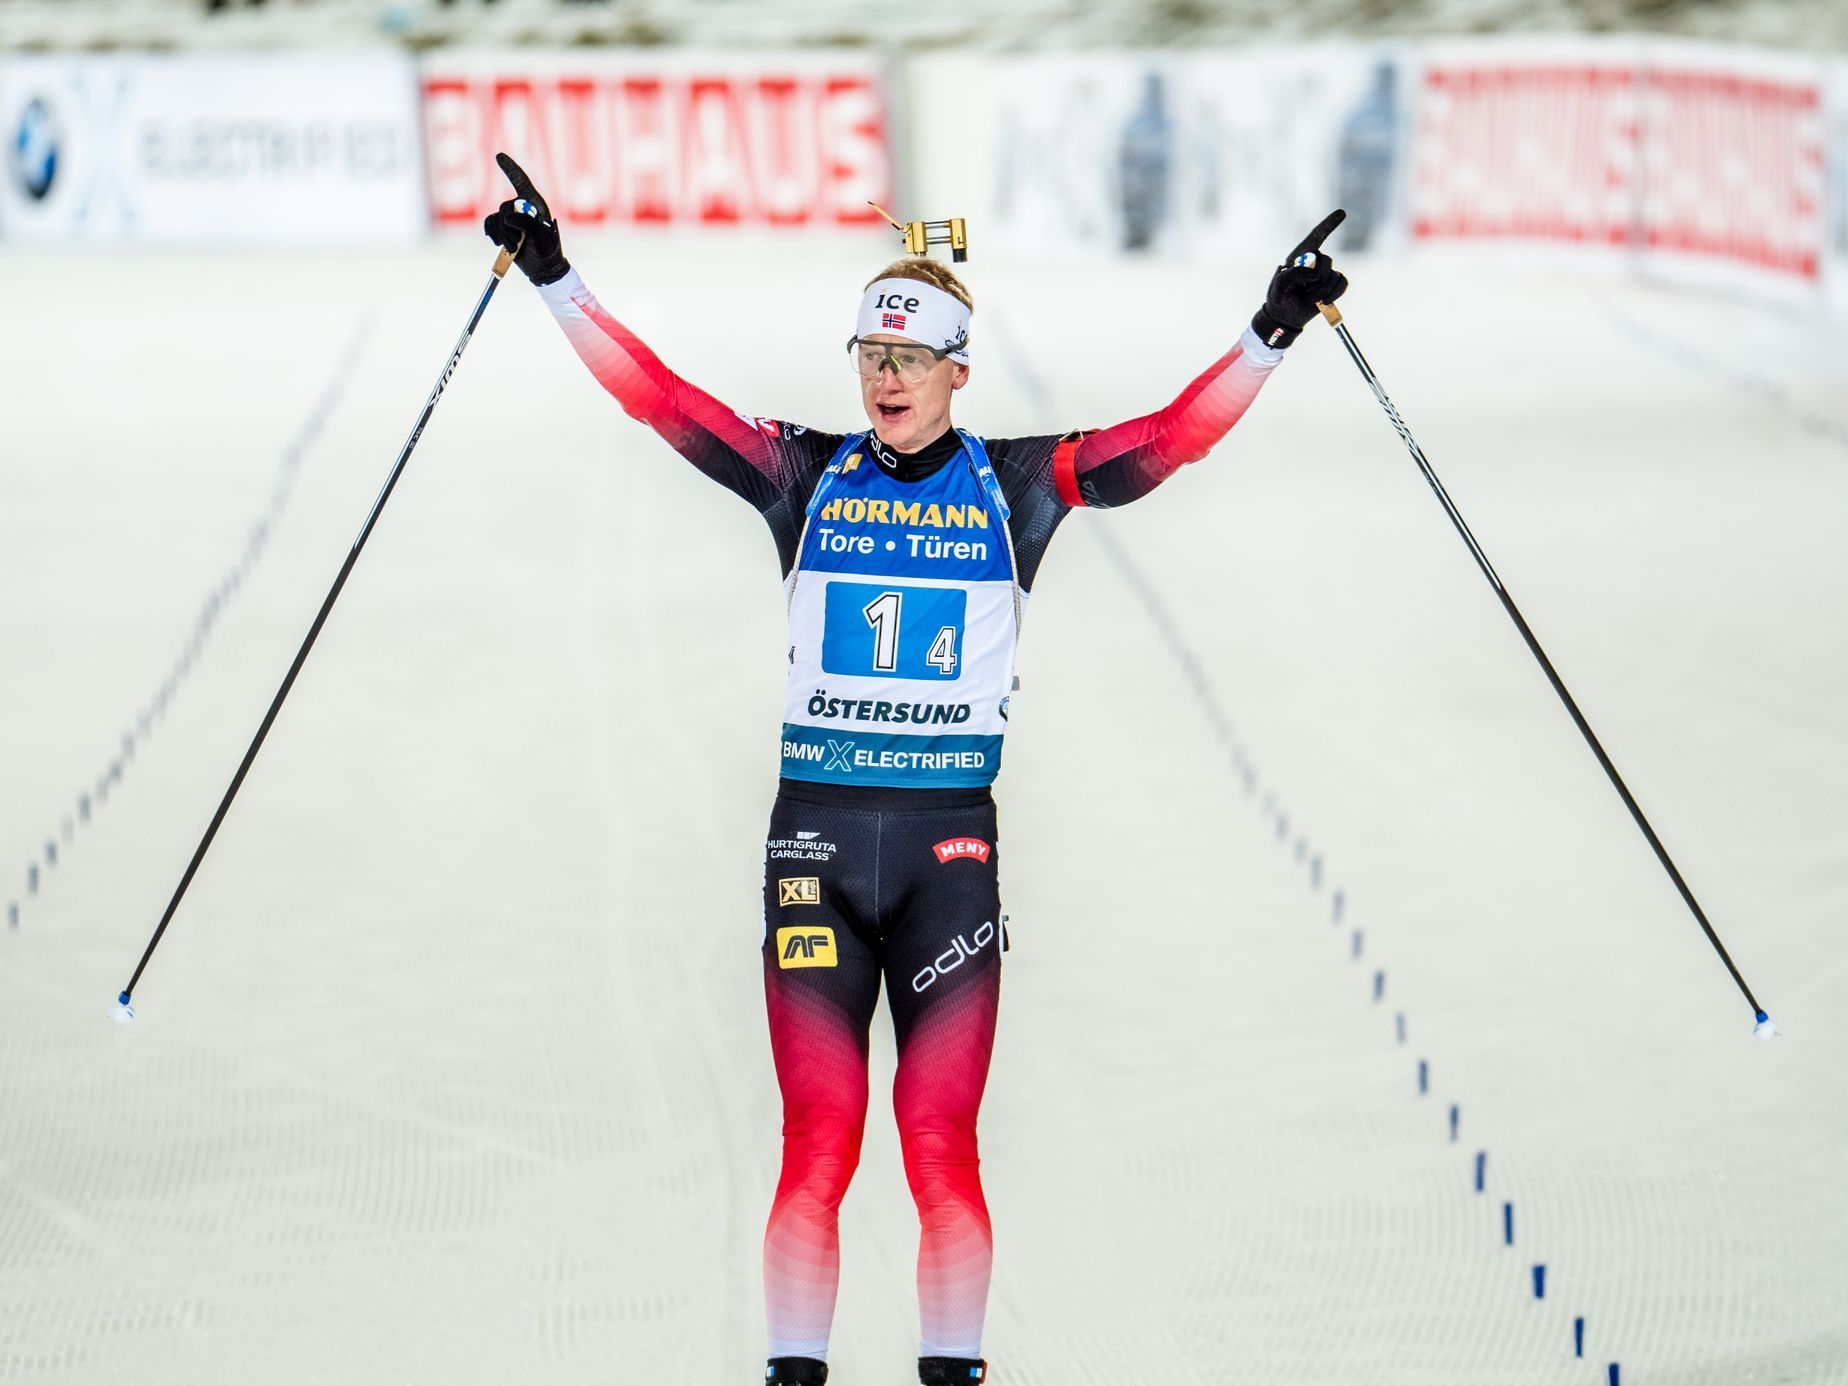 Světový pohár v biatlonu, Östersund 2019 (Johannes Bö)